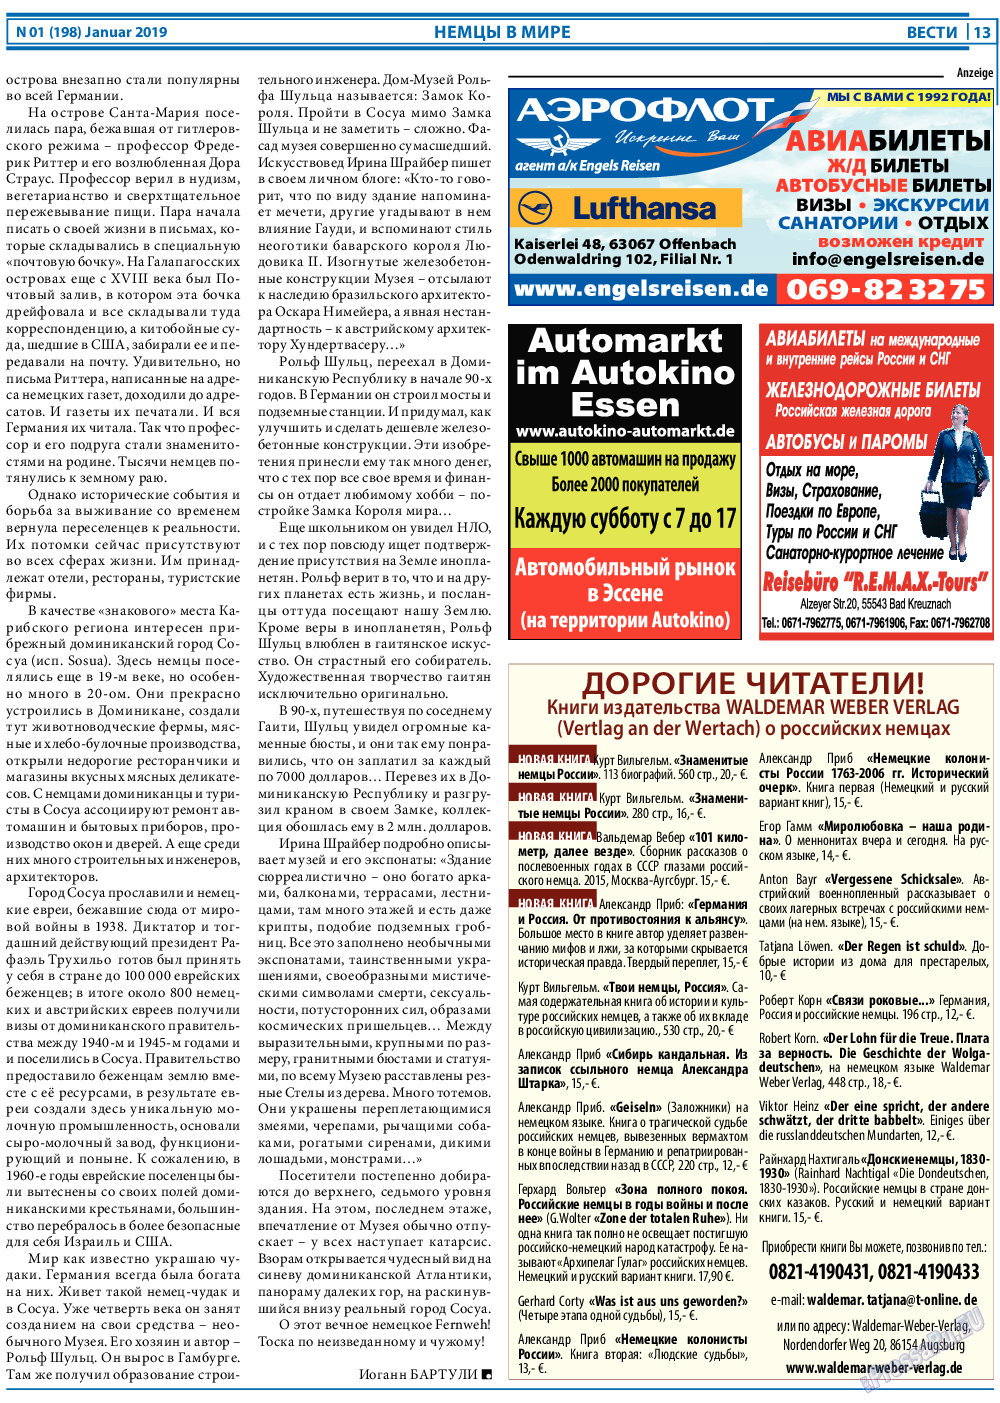 Вести, газета. 2019 №1 стр.13